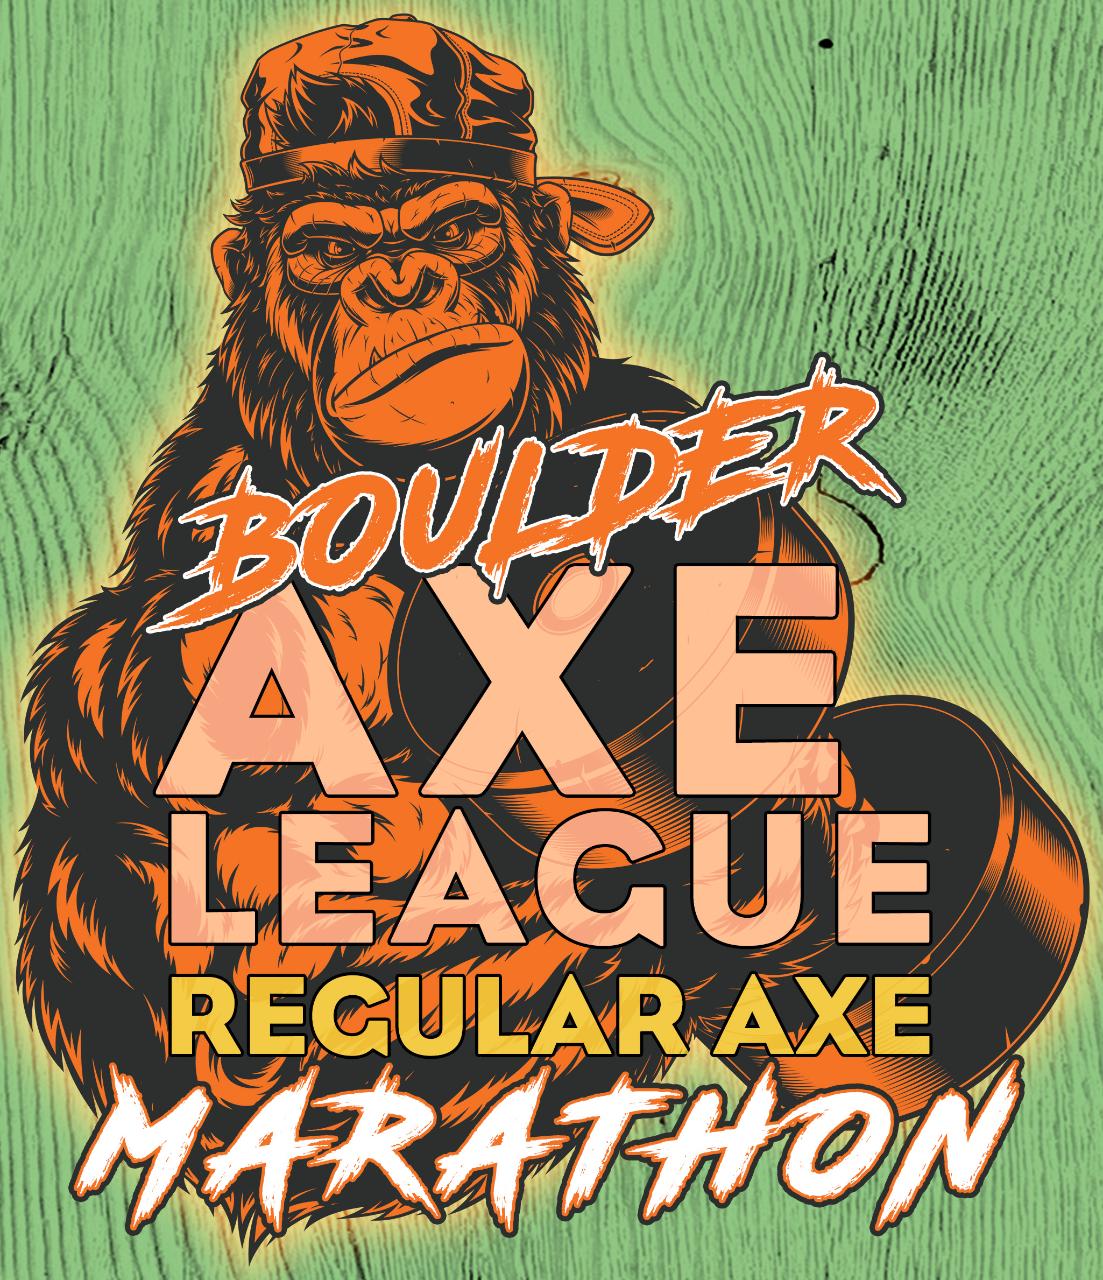 Axe League Registration - Boulder Normal Axe Marathon